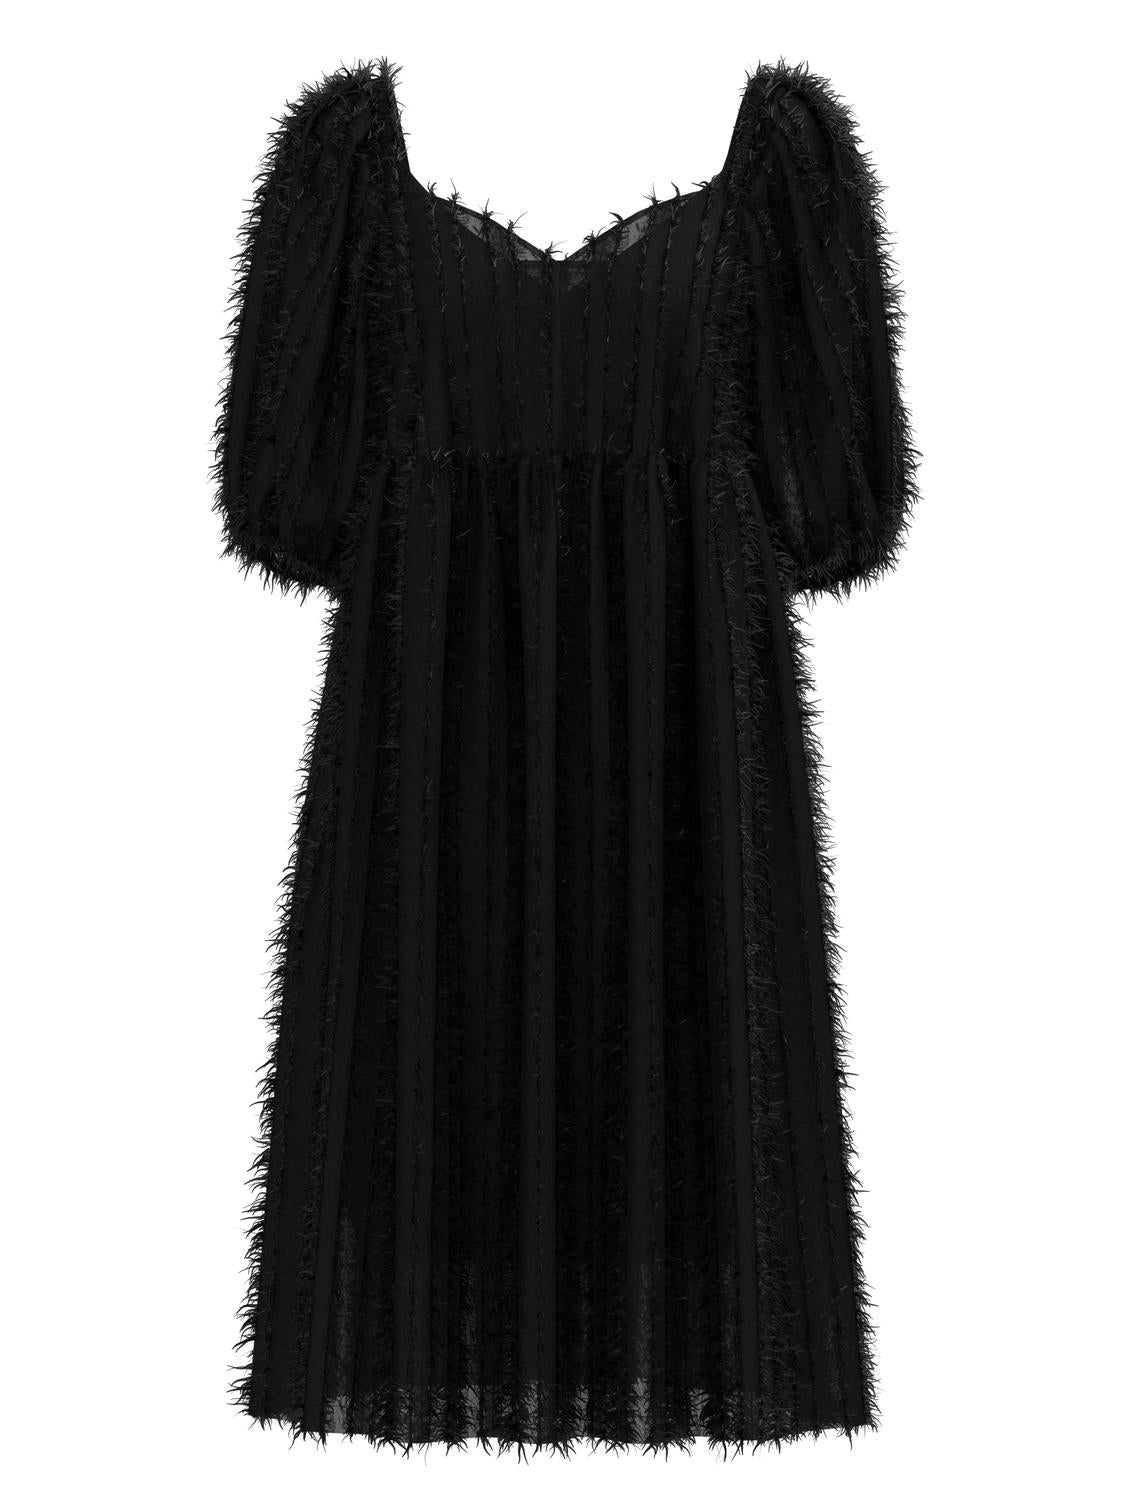 OBJSTELLA Dress - Black